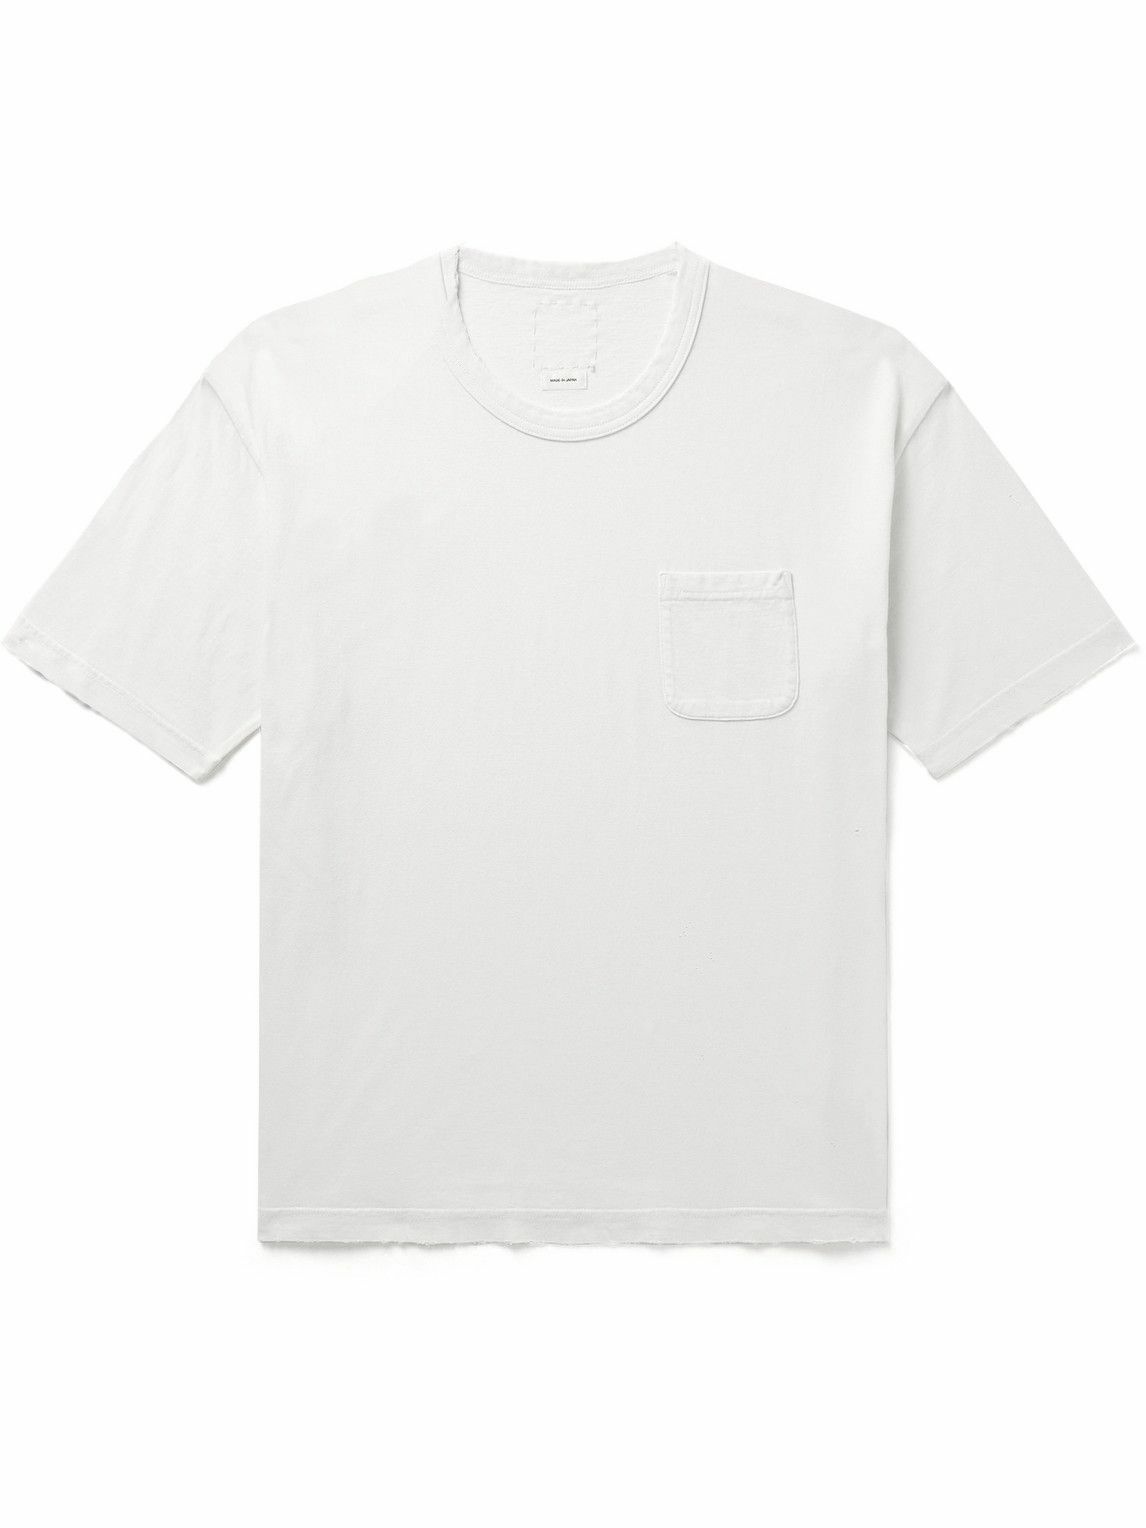 Visvim - Jumbo Distressed Cotton-Jersey T-Shirt - White Visvim